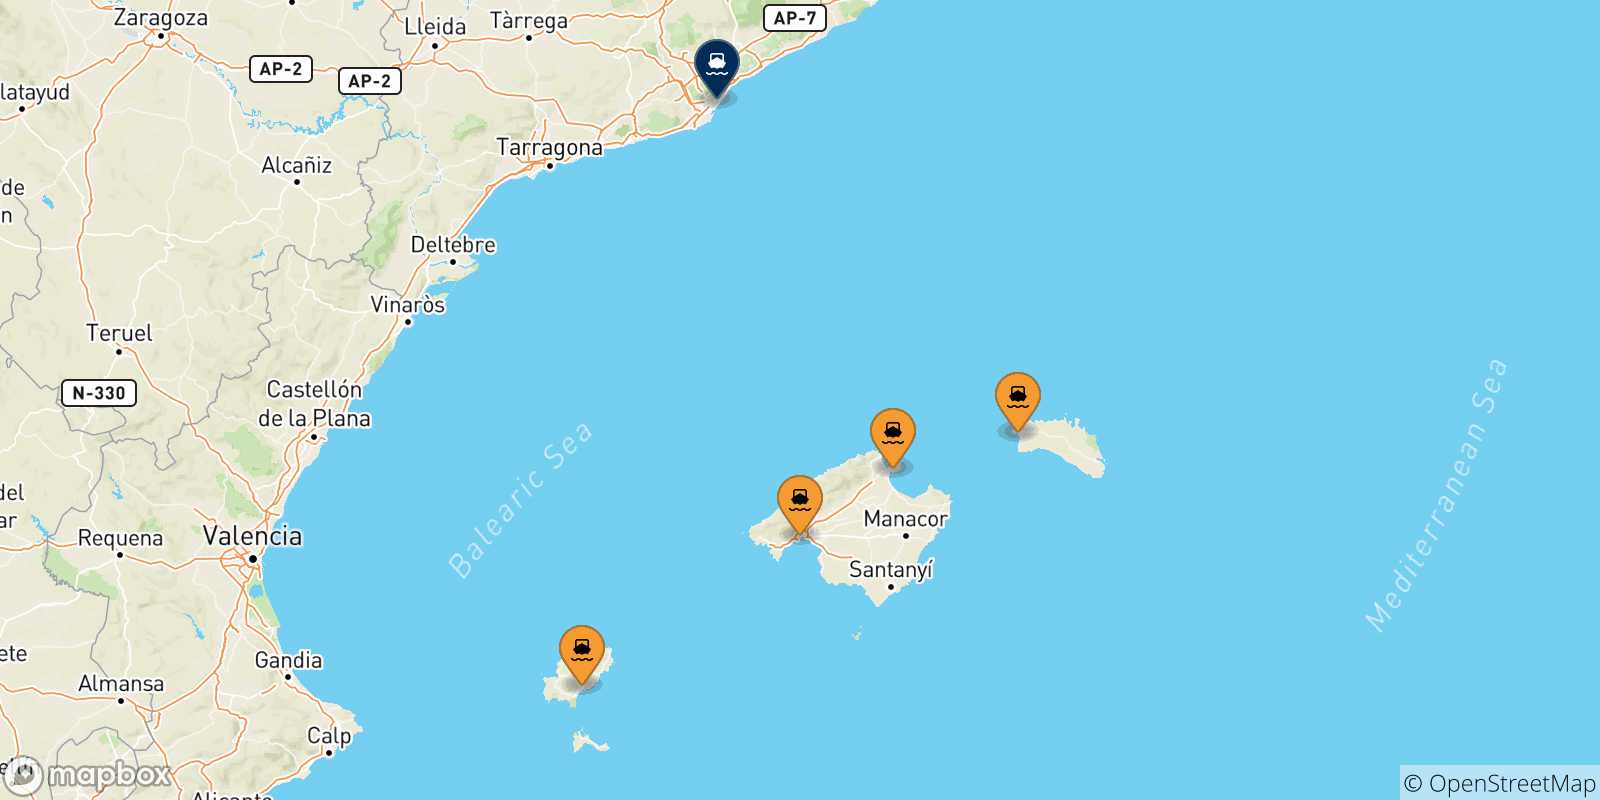 Carte des traversées possibles entre l'Espagne et Barcelone